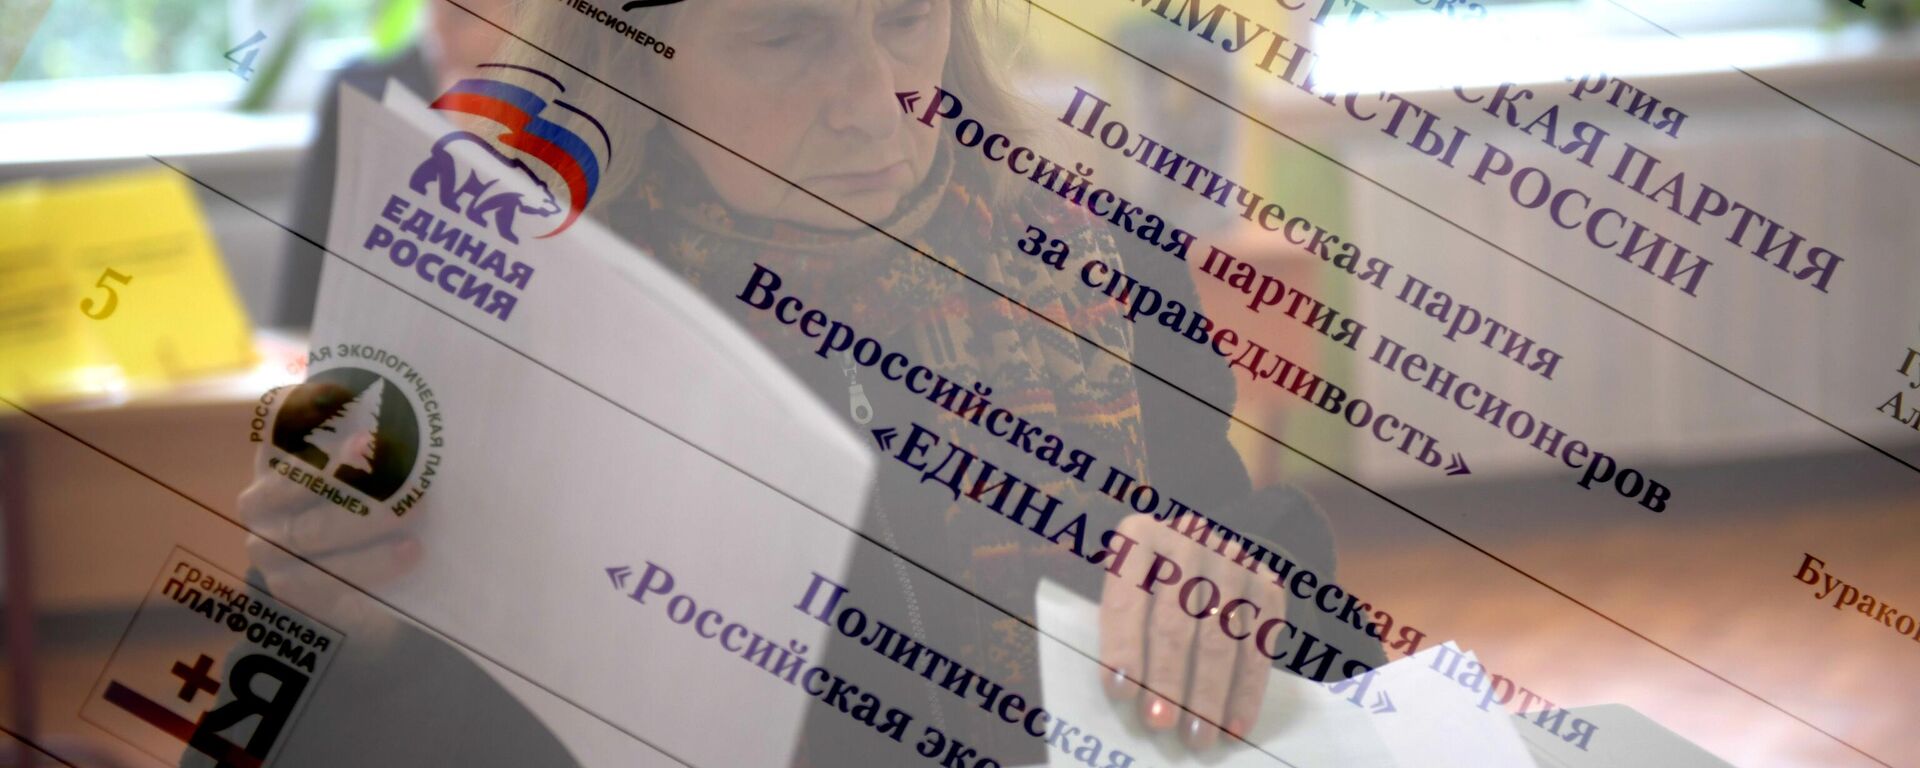 Житель Москвы в единый день голосования на избирательном участке № 90. - Sputnik Узбекистан, 1920, 15.09.2021